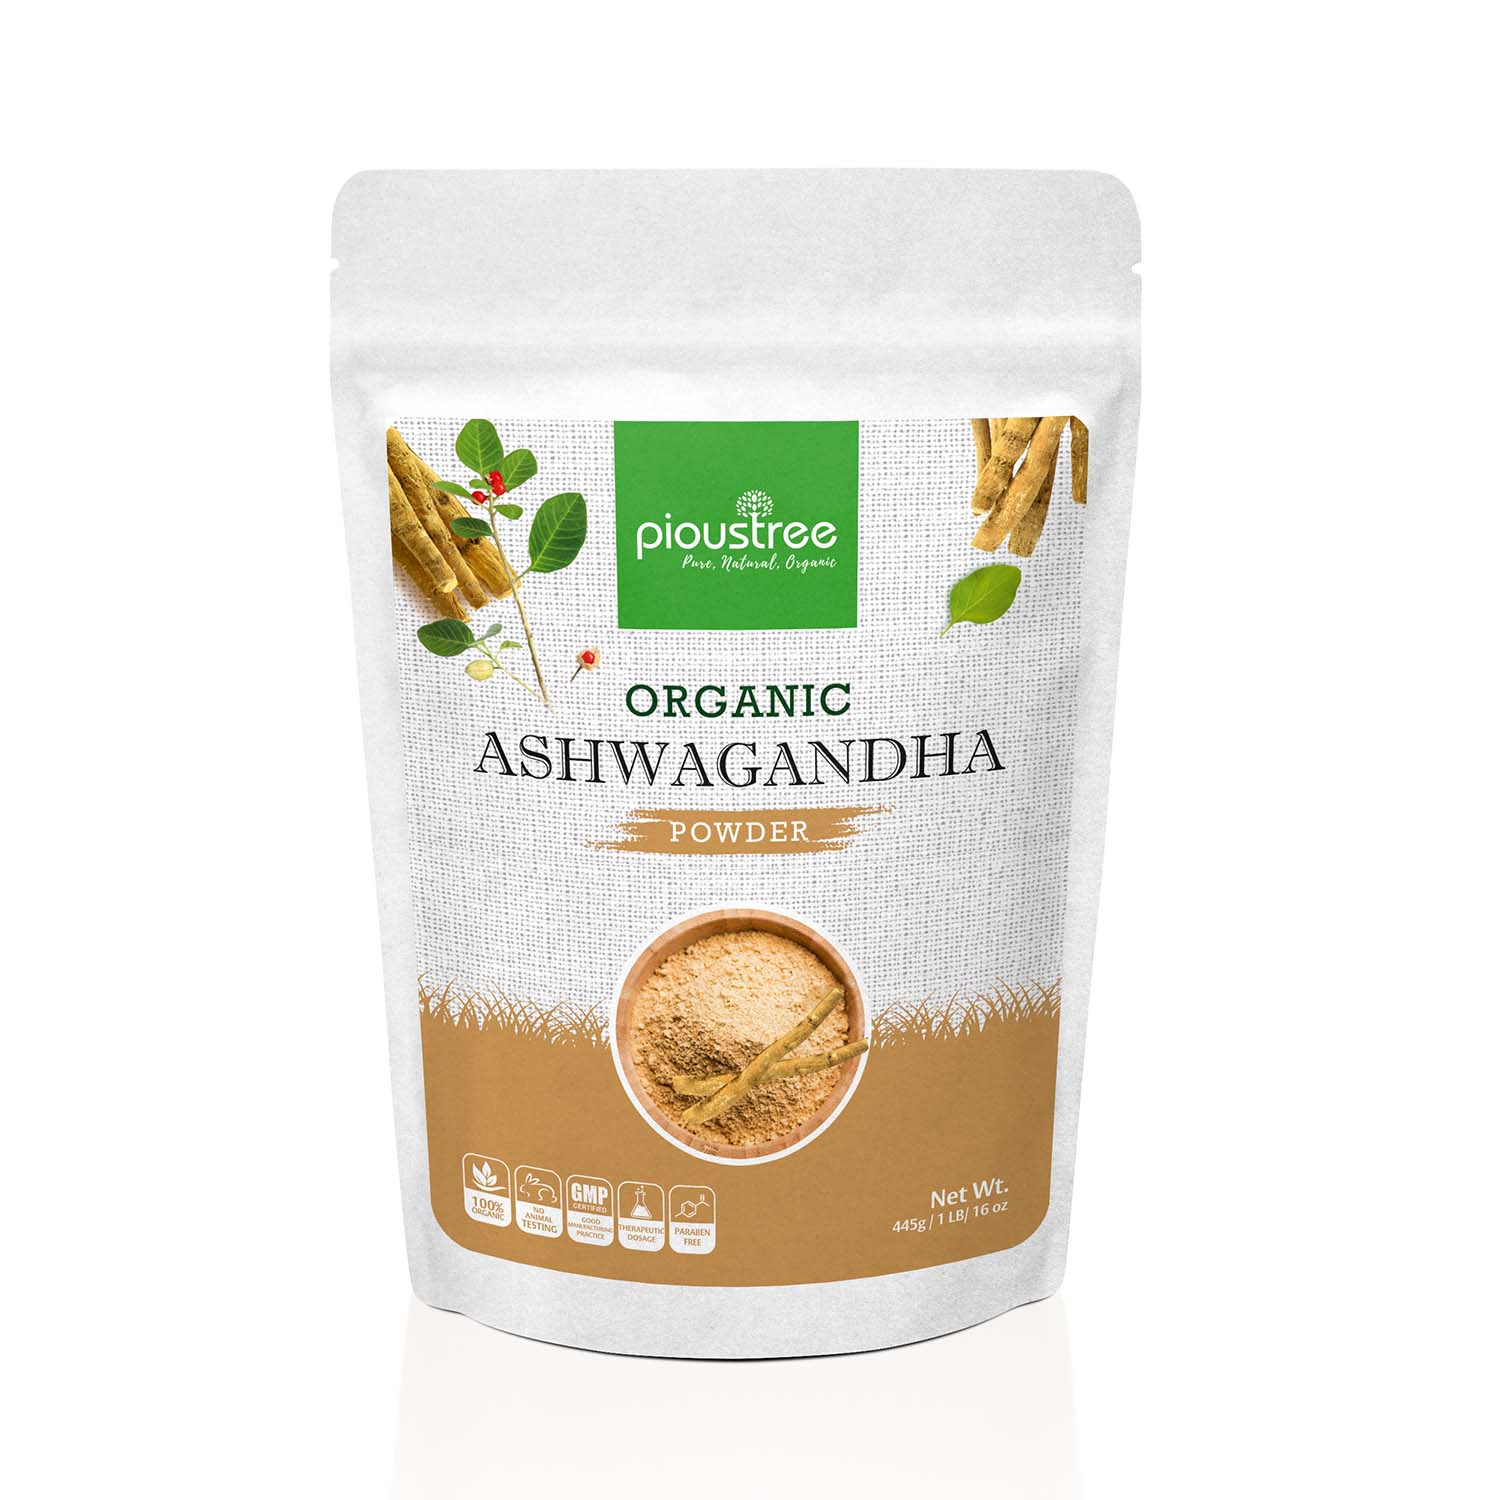 how to make ashwagandha powder